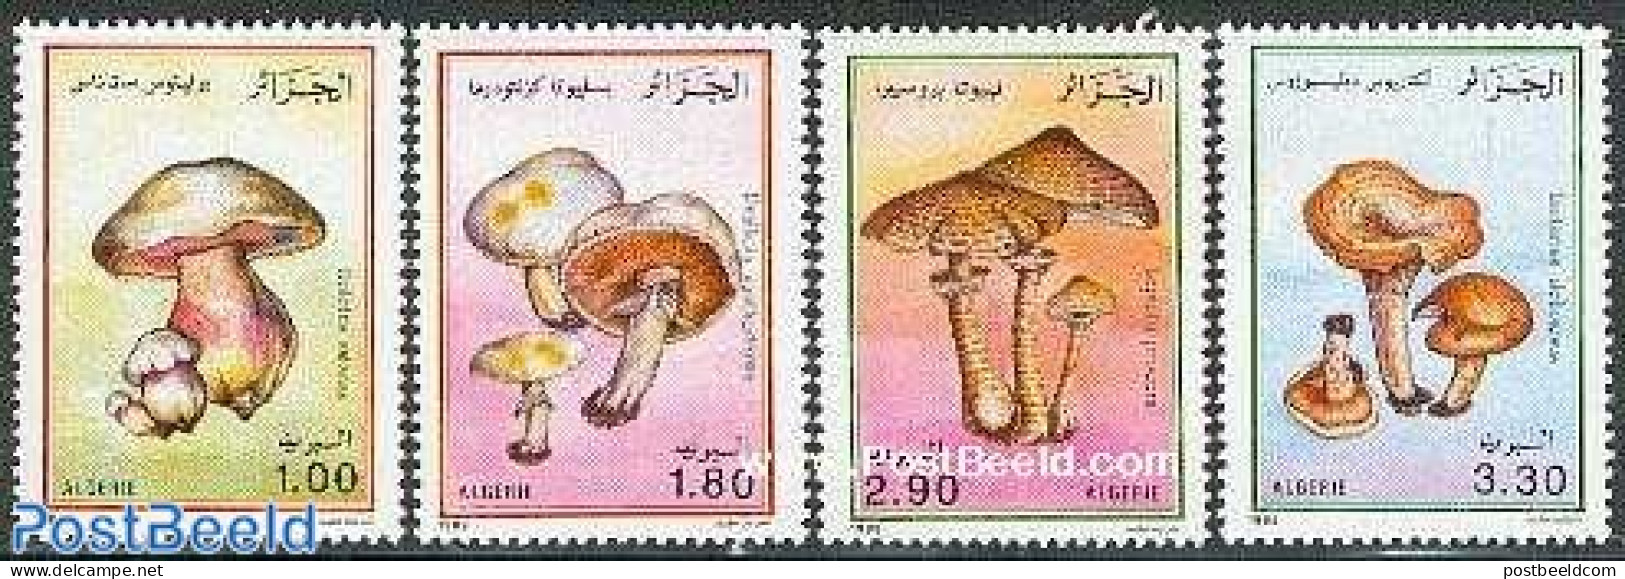 Algeria 1989 Mushrooms 4v, Mint NH, Nature - Mushrooms - Unused Stamps